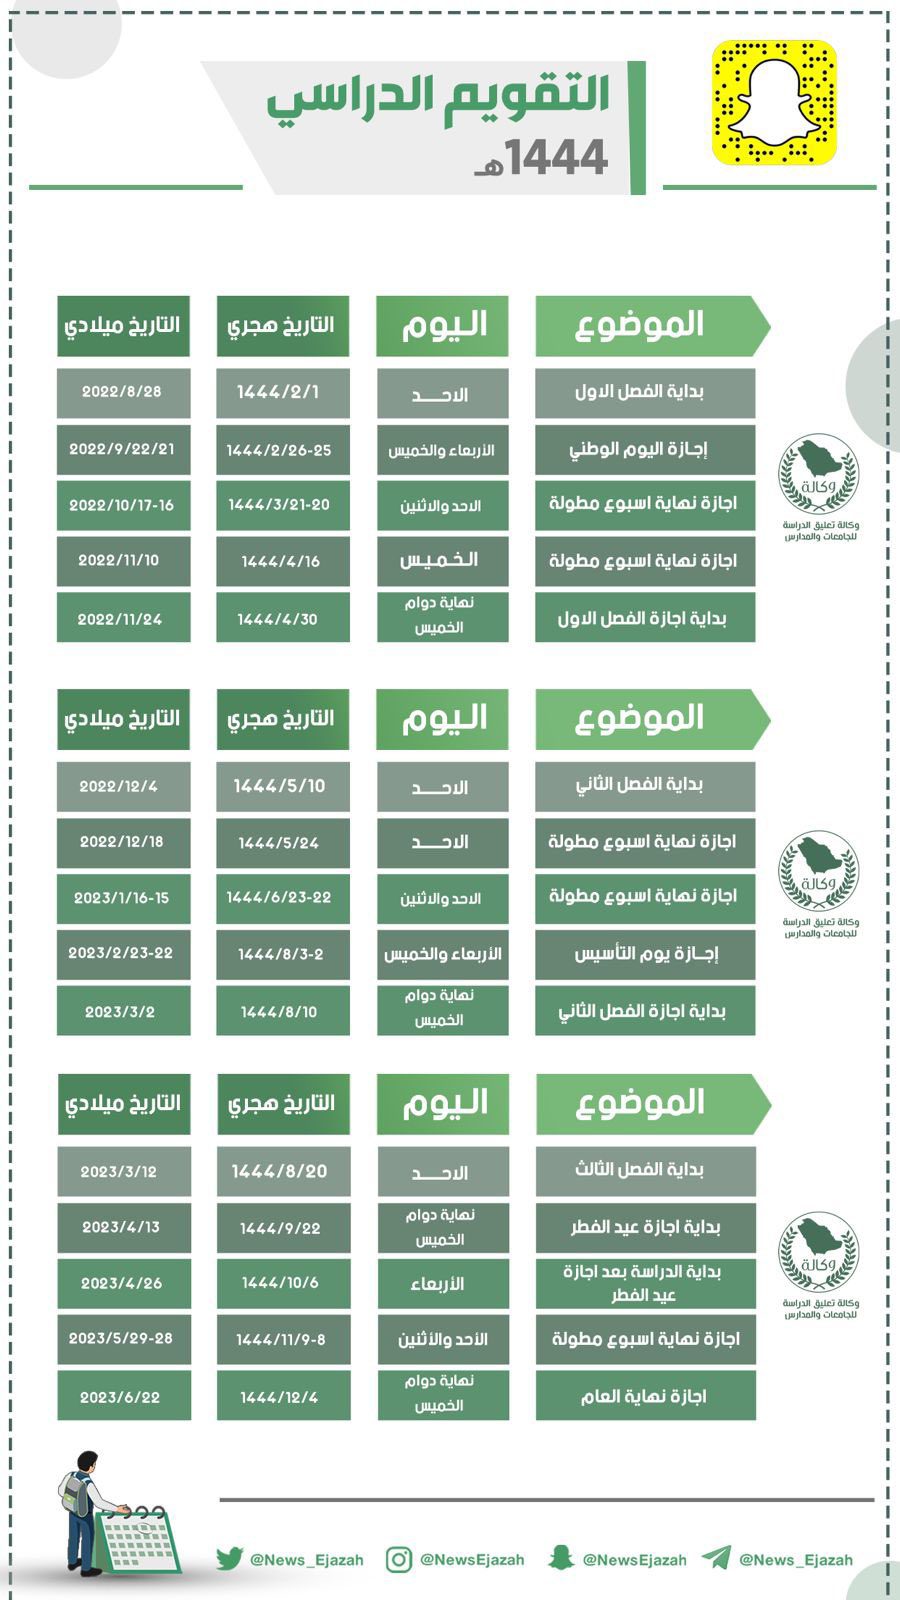 D8 A7 D9 84 D8 AA D9 82 D9 88 D9 8A D9 85 D8 A7 D9 84 D8 AF D8 B1 D8 A7 D8 B3 D9 8A 1 - وزارة التعليم السعودية توضح جدول الاجازات المطولة ١٤٤٤ وفقا للتقويم الدراسي 1444